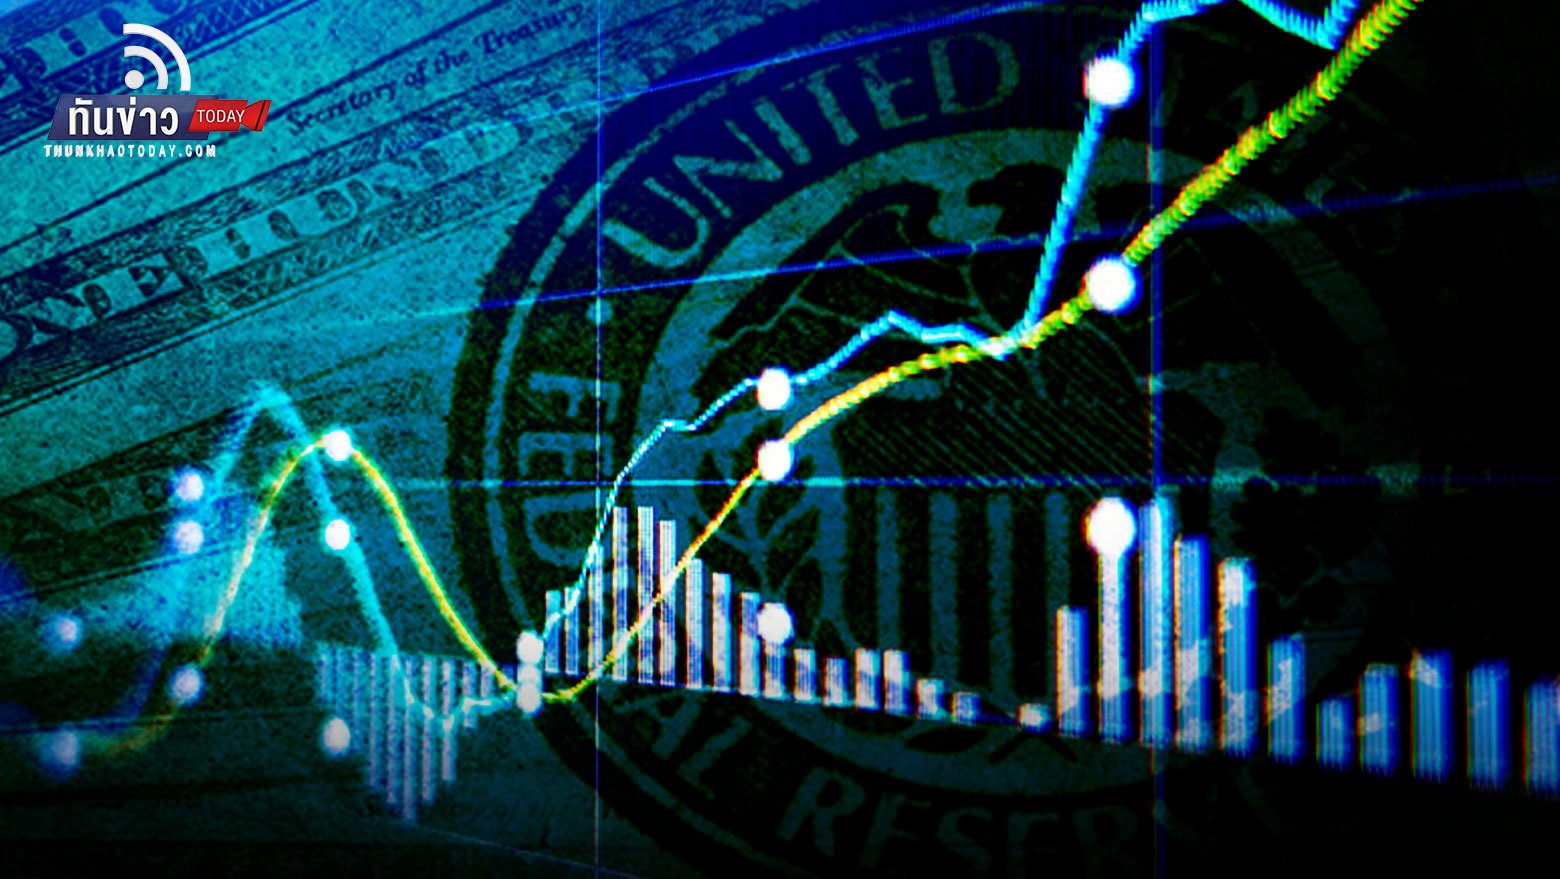 Fed ปรับดอกเบี้ย 0.25% ตามคาด ตลาดหุ้นพุ่งรับข่าว ทองคำร่วงก่อนกลับตัวเพิ่มขึ้น 100 บาท